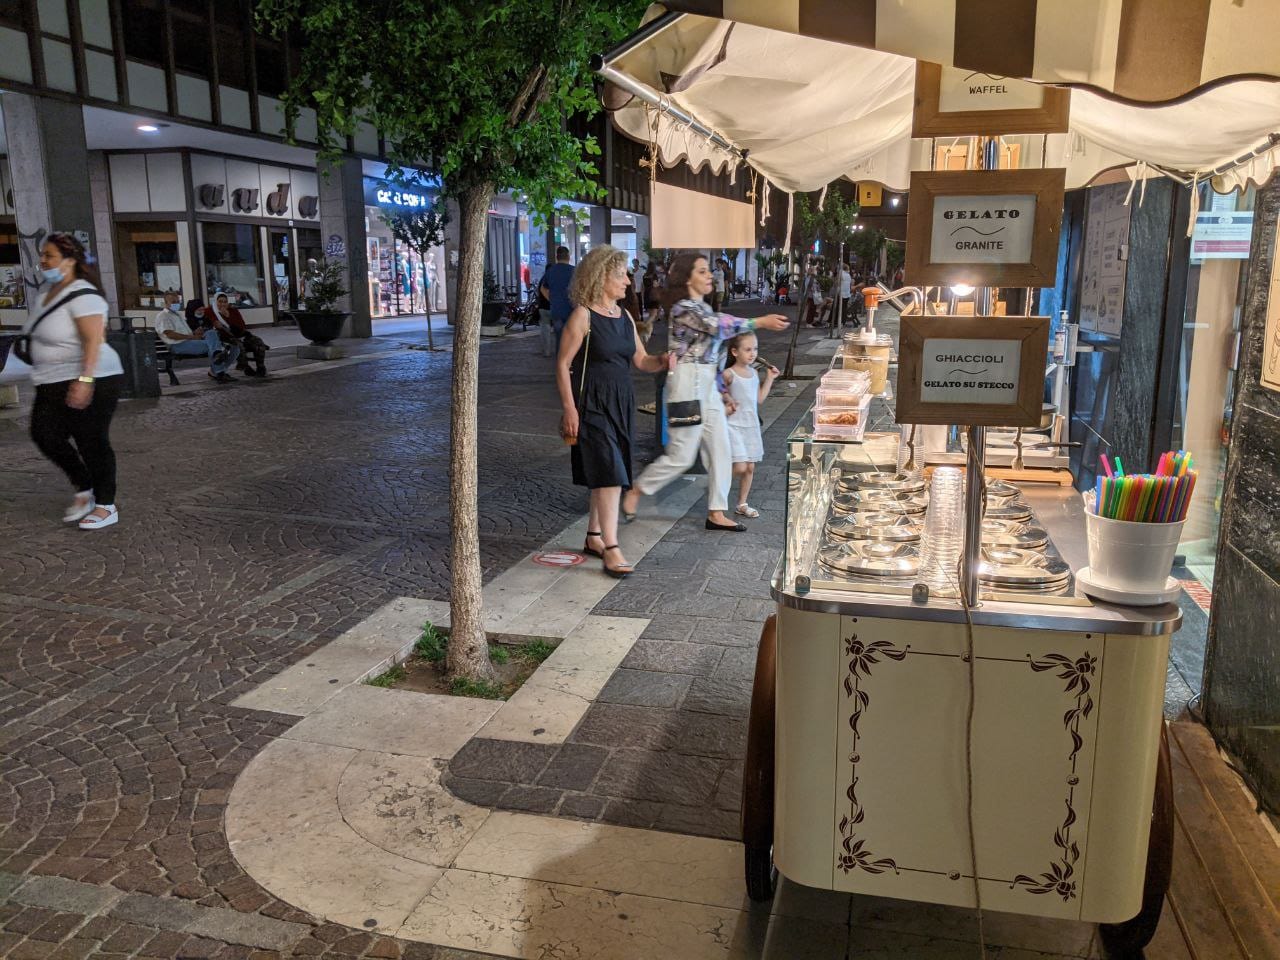 Negozi aperti la sera a Saronno: il giovedì inizia a ingranare